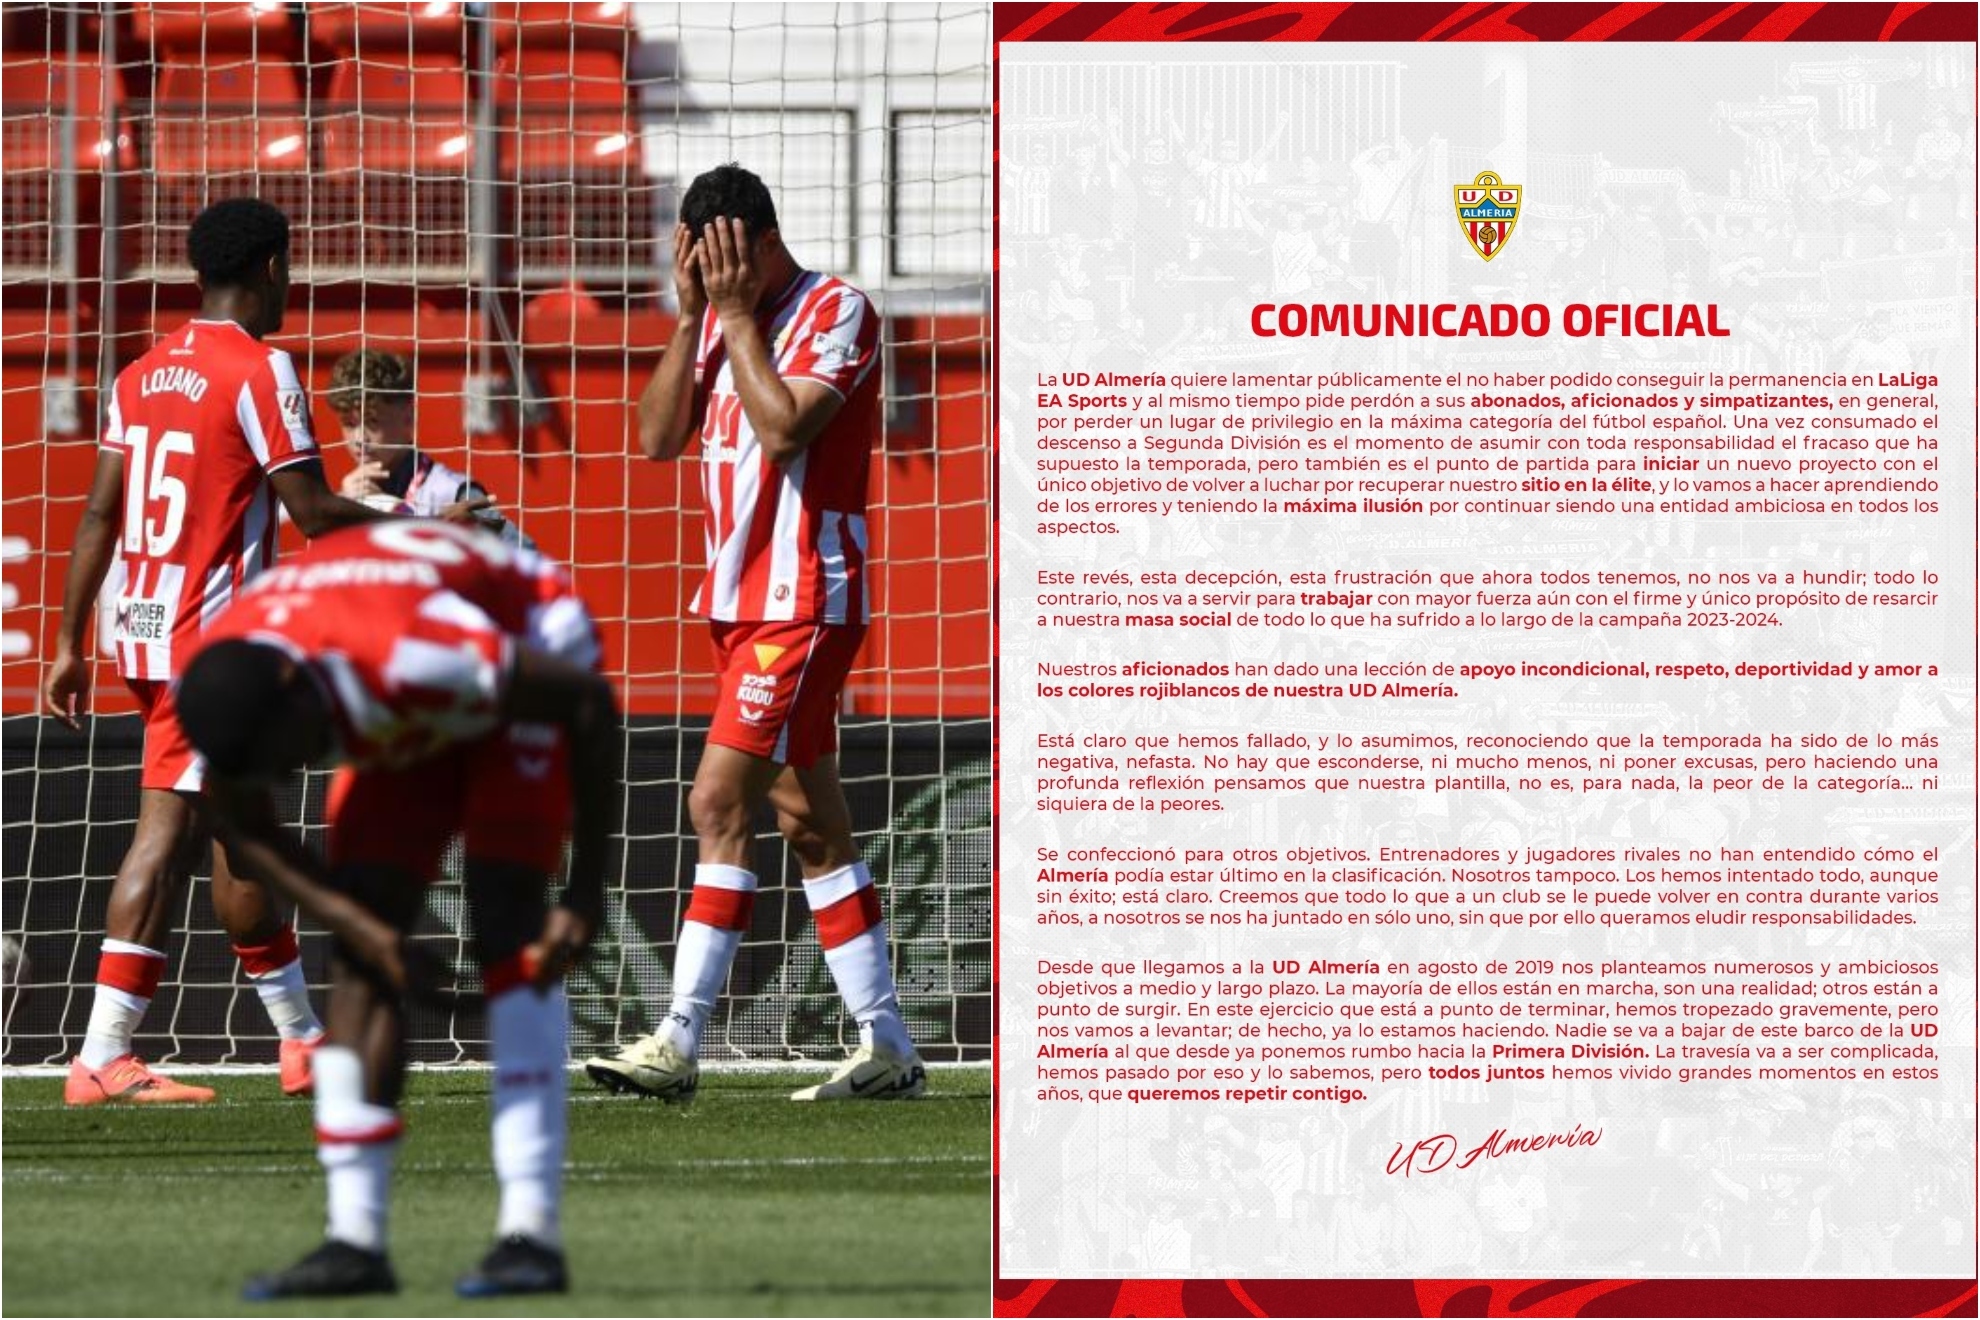 Un montaje con una imagen de los jugadores del Almera lamentndose y otra del comunicado del club.